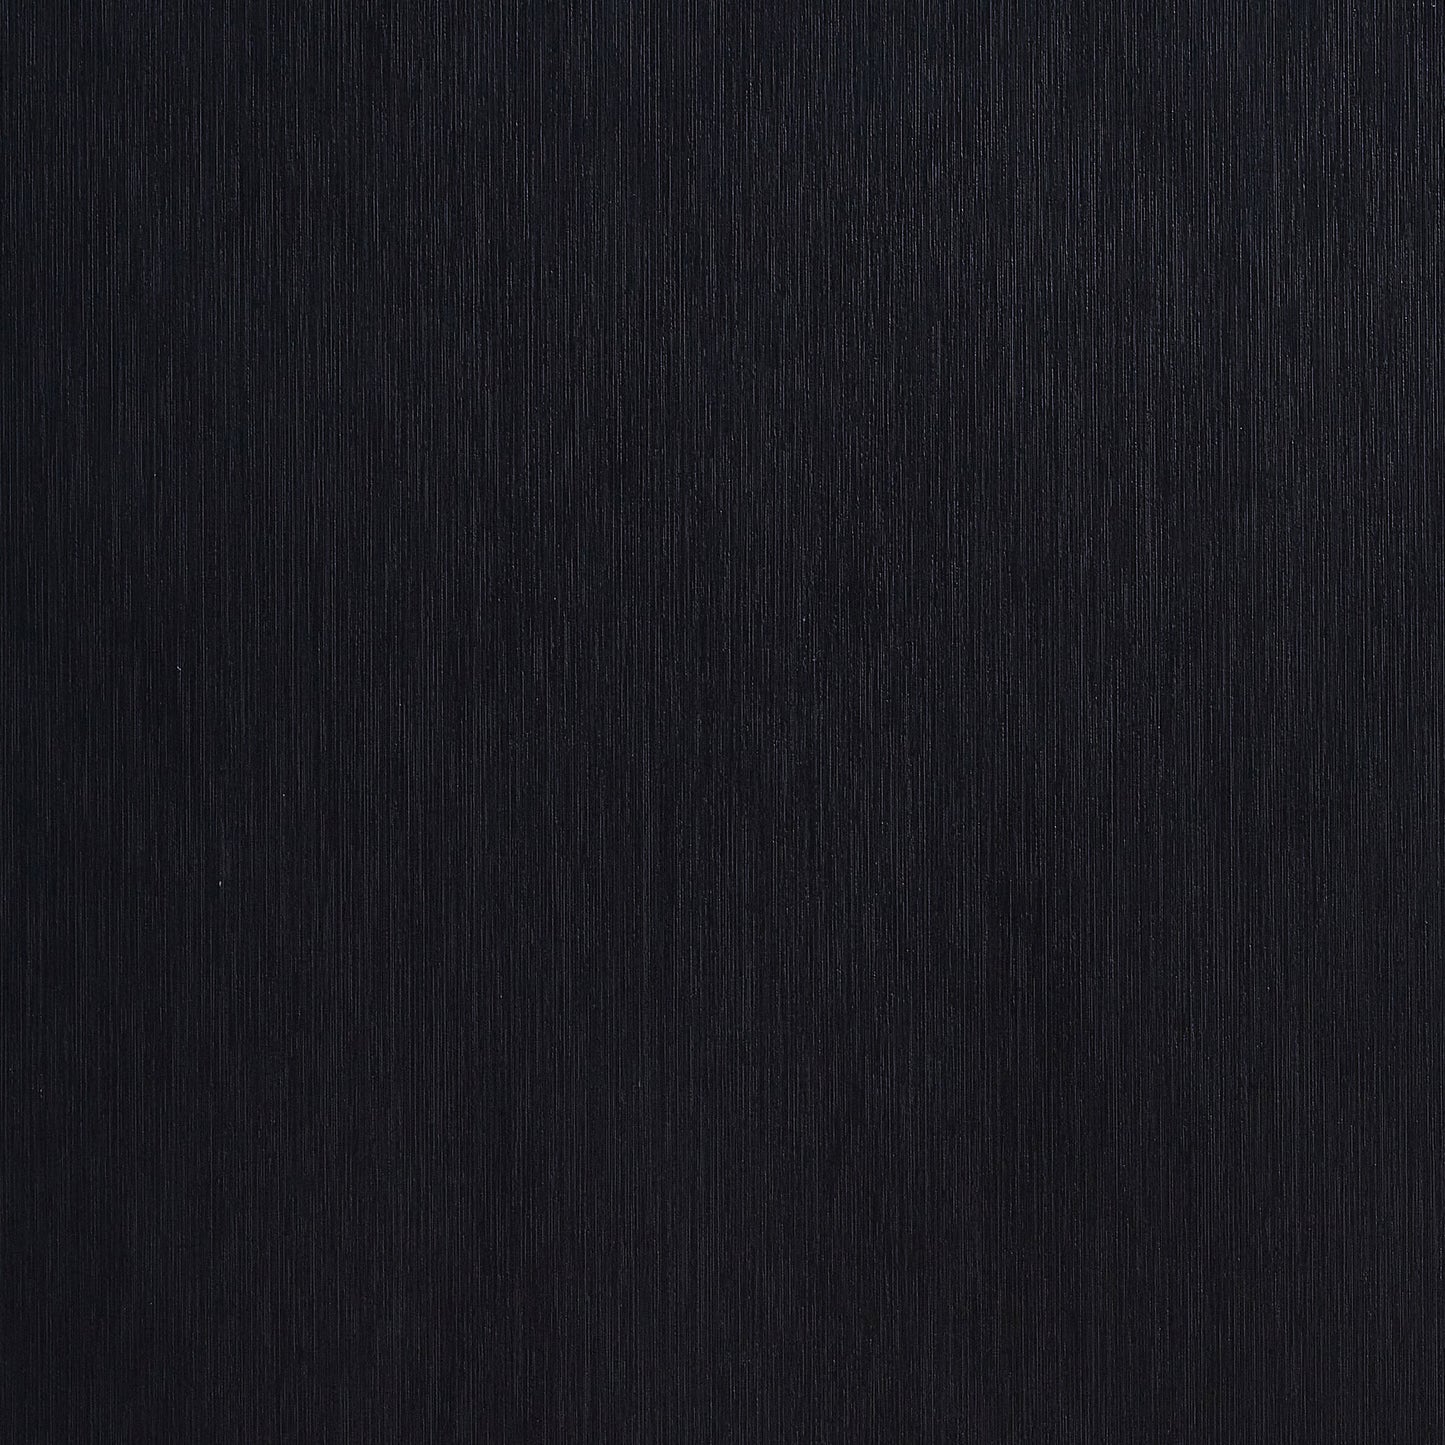 Marceline Wood Eastern King LED Panel Bed Black